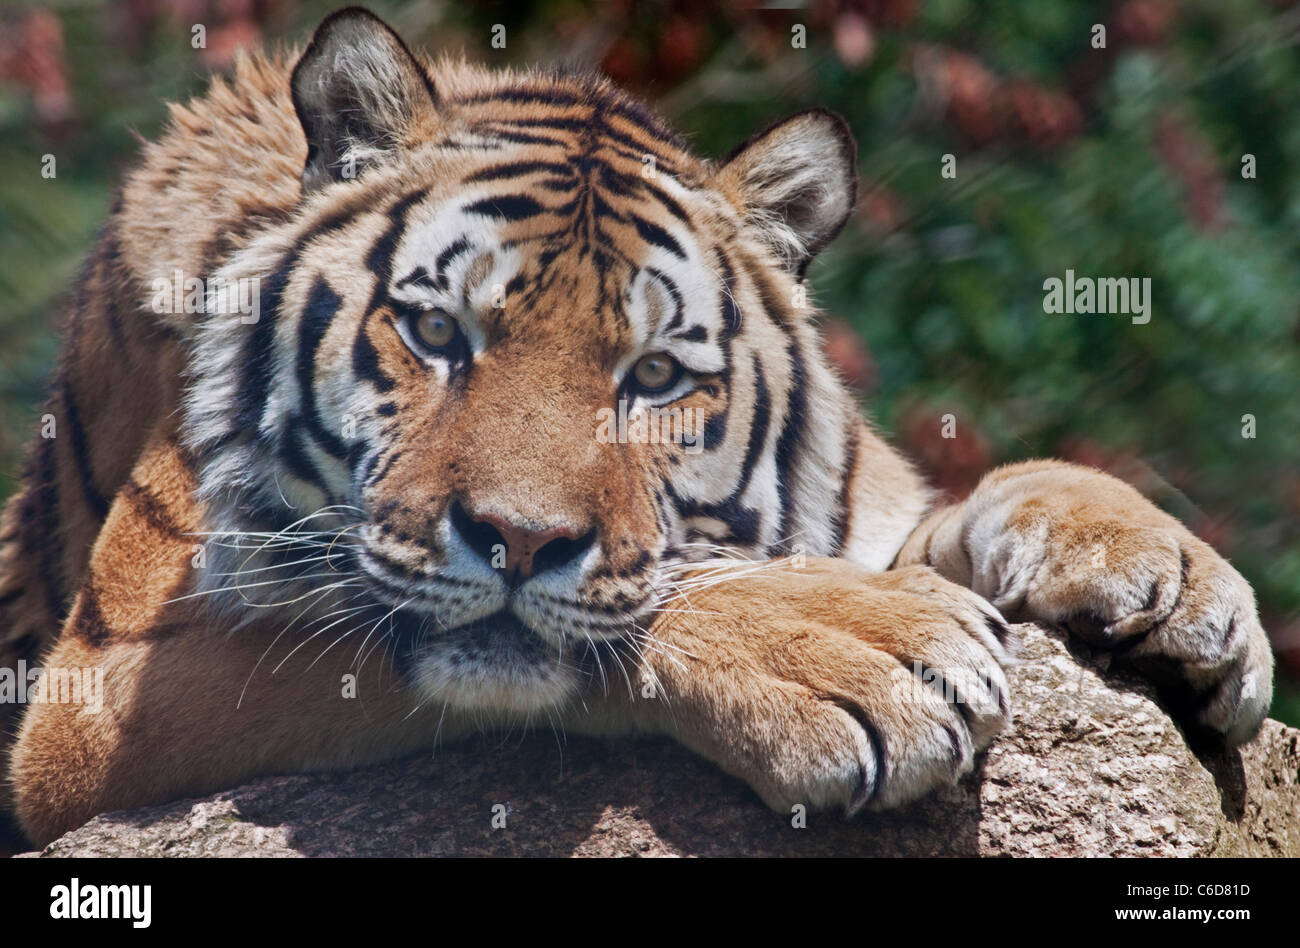 Amur Tiger/Siberian Tiger (panthera tigris altaica) Stock Photo